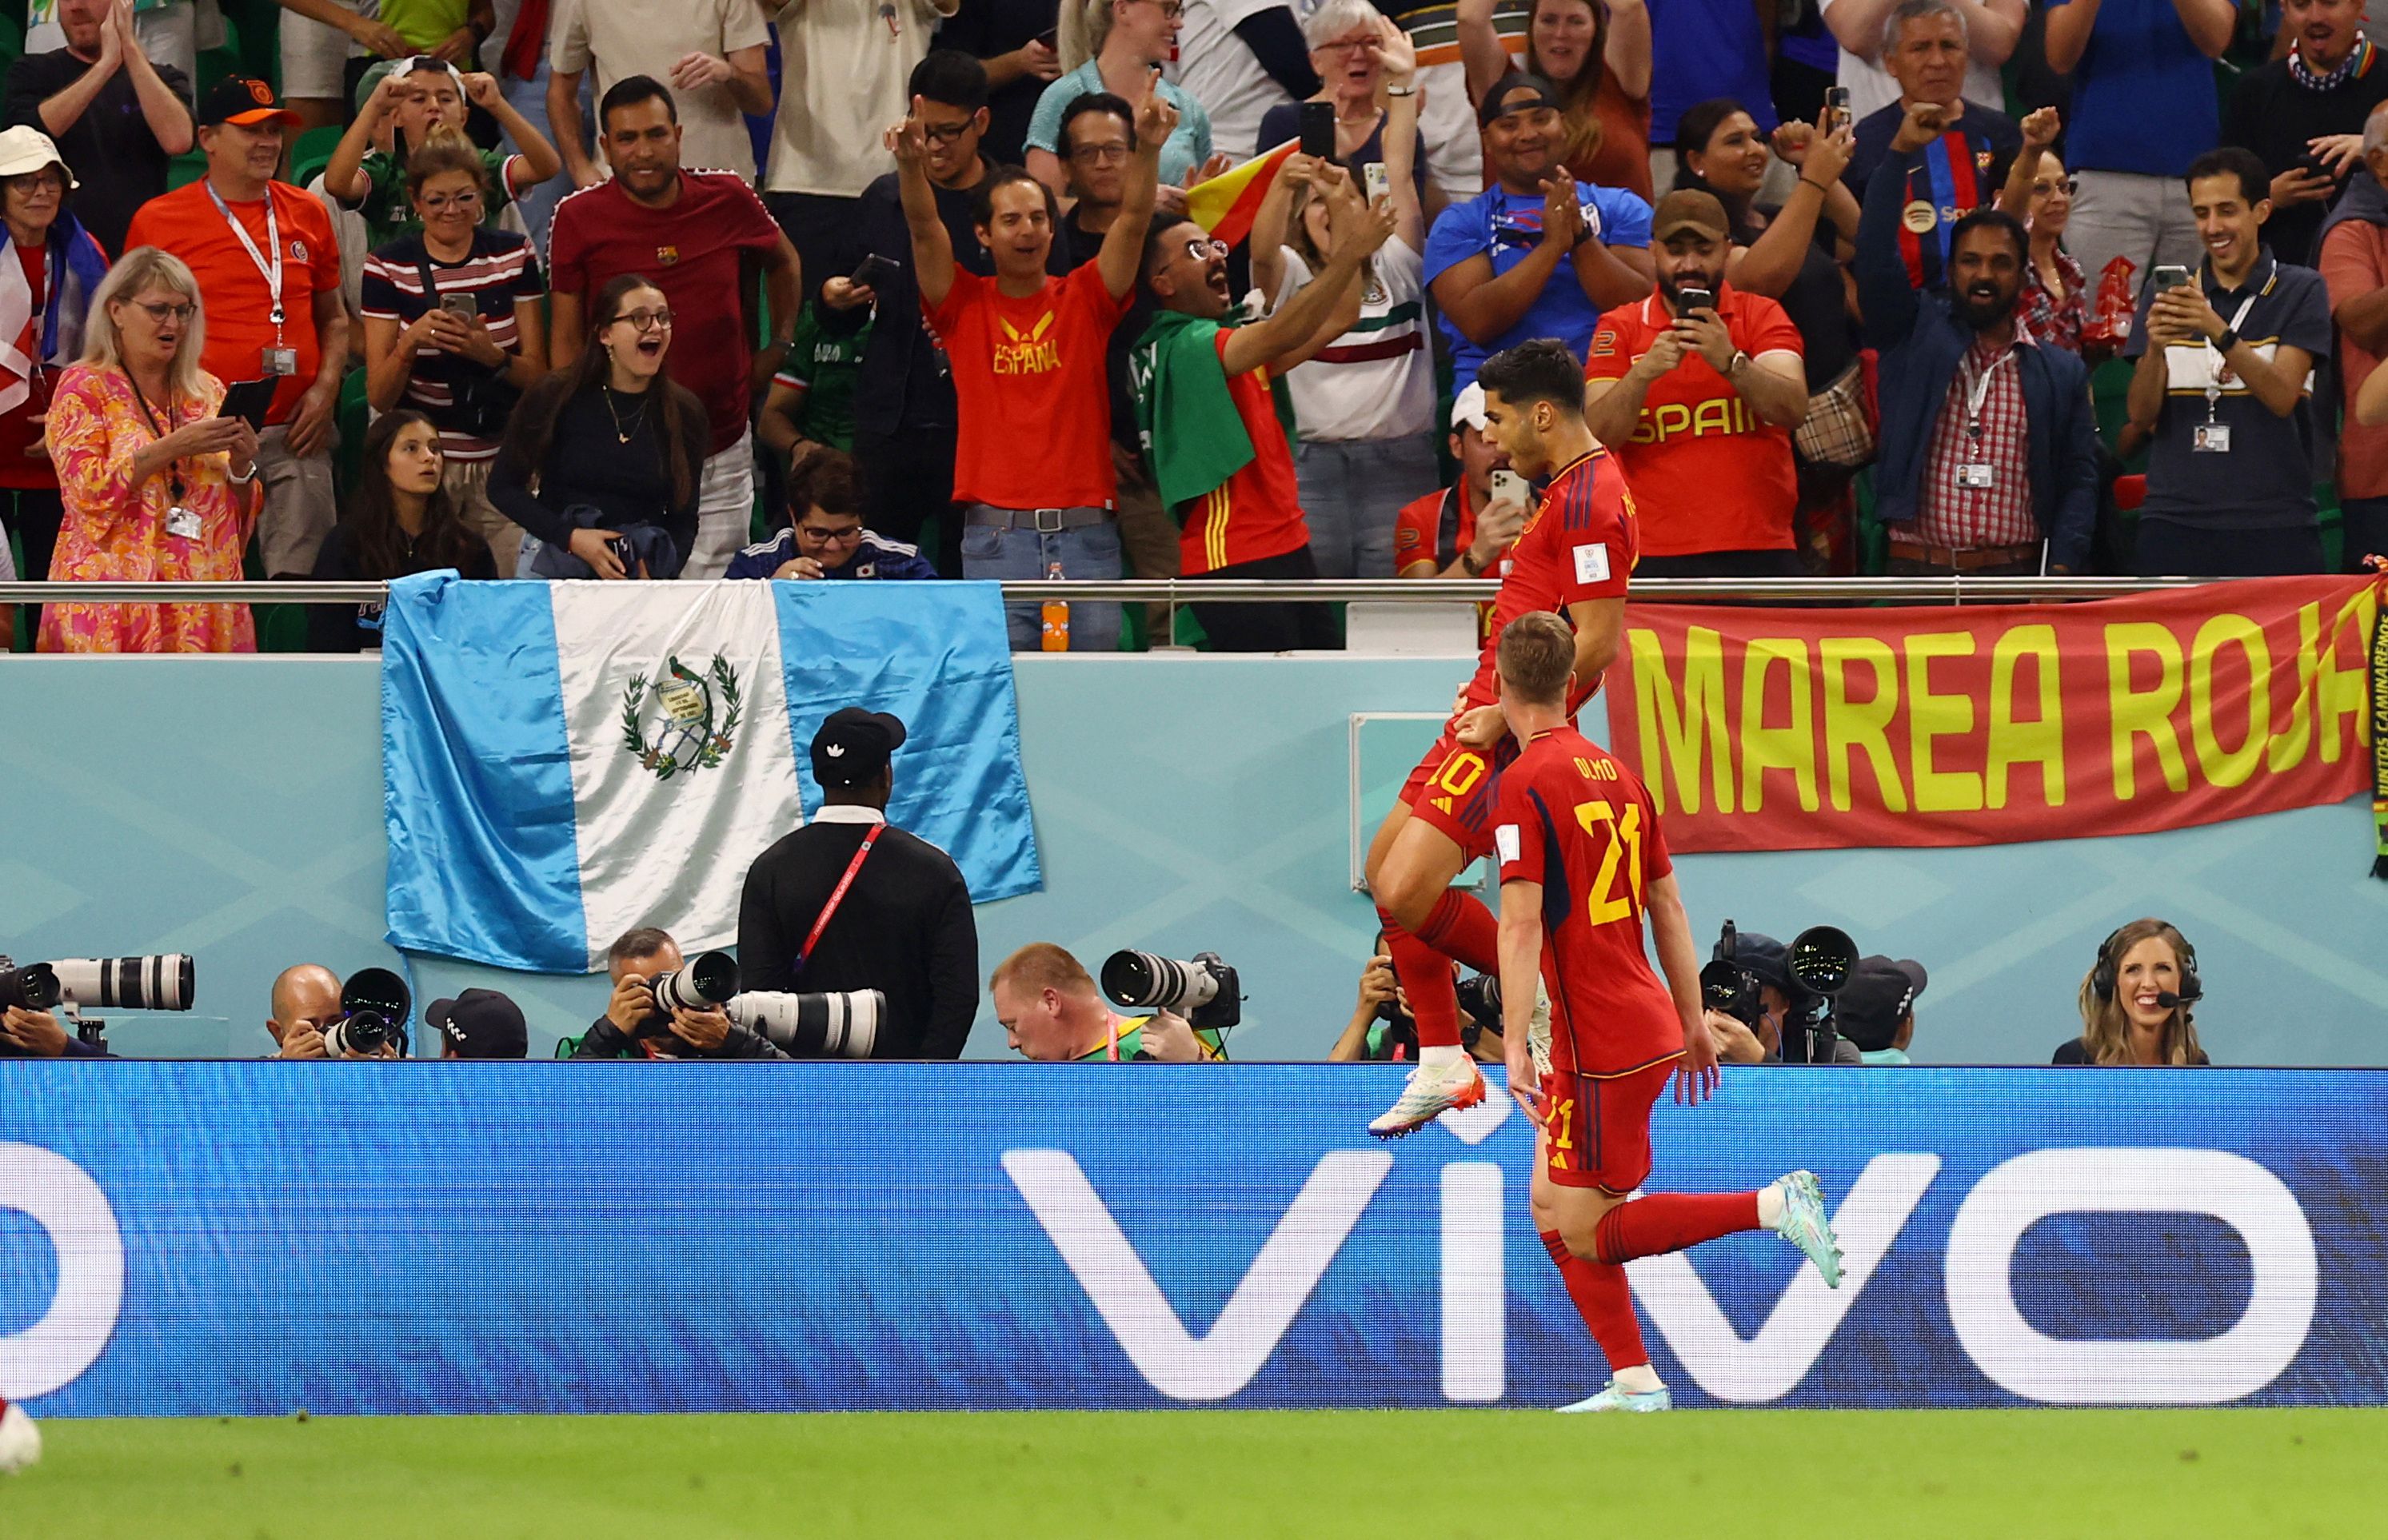 Alba asiste a Asensio que suma el segundo tanto para España frente a Costa Rica. REUTERS/Hannah Mckay